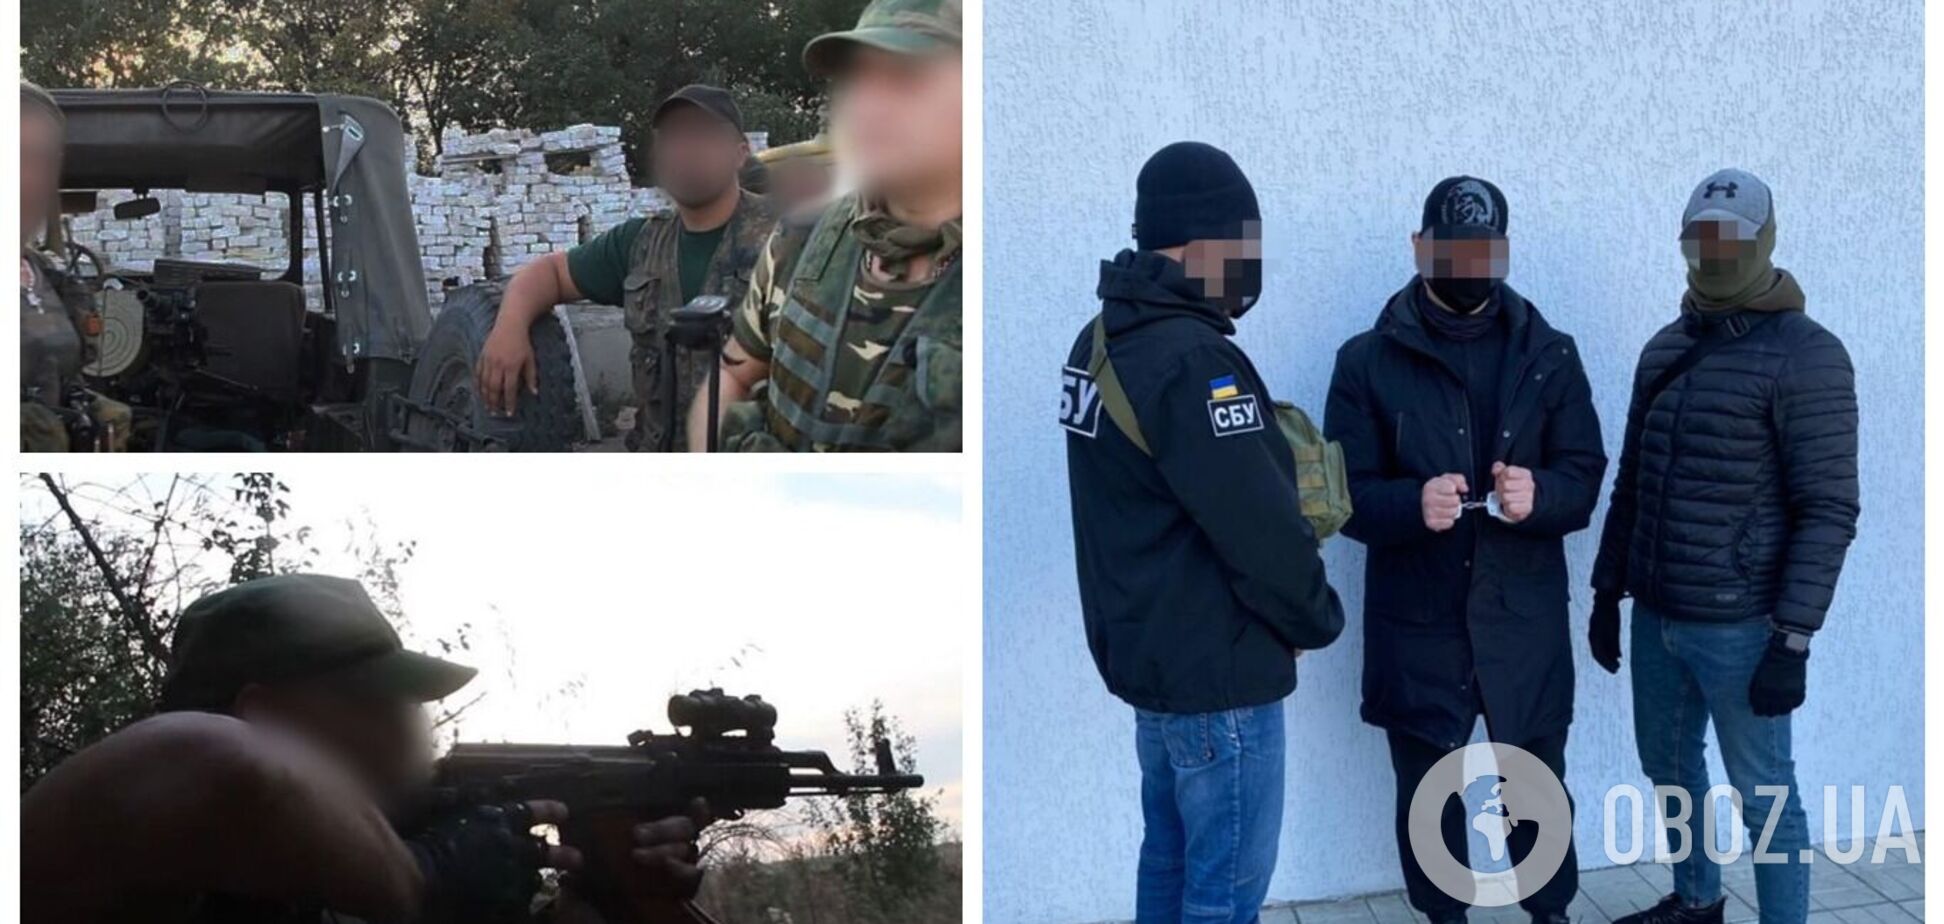 СБУ затримала екс-ватажка спецпідрозділу МДБ 'ЛНР', який брав участь у захопленні Луганського аеропорту. Фото